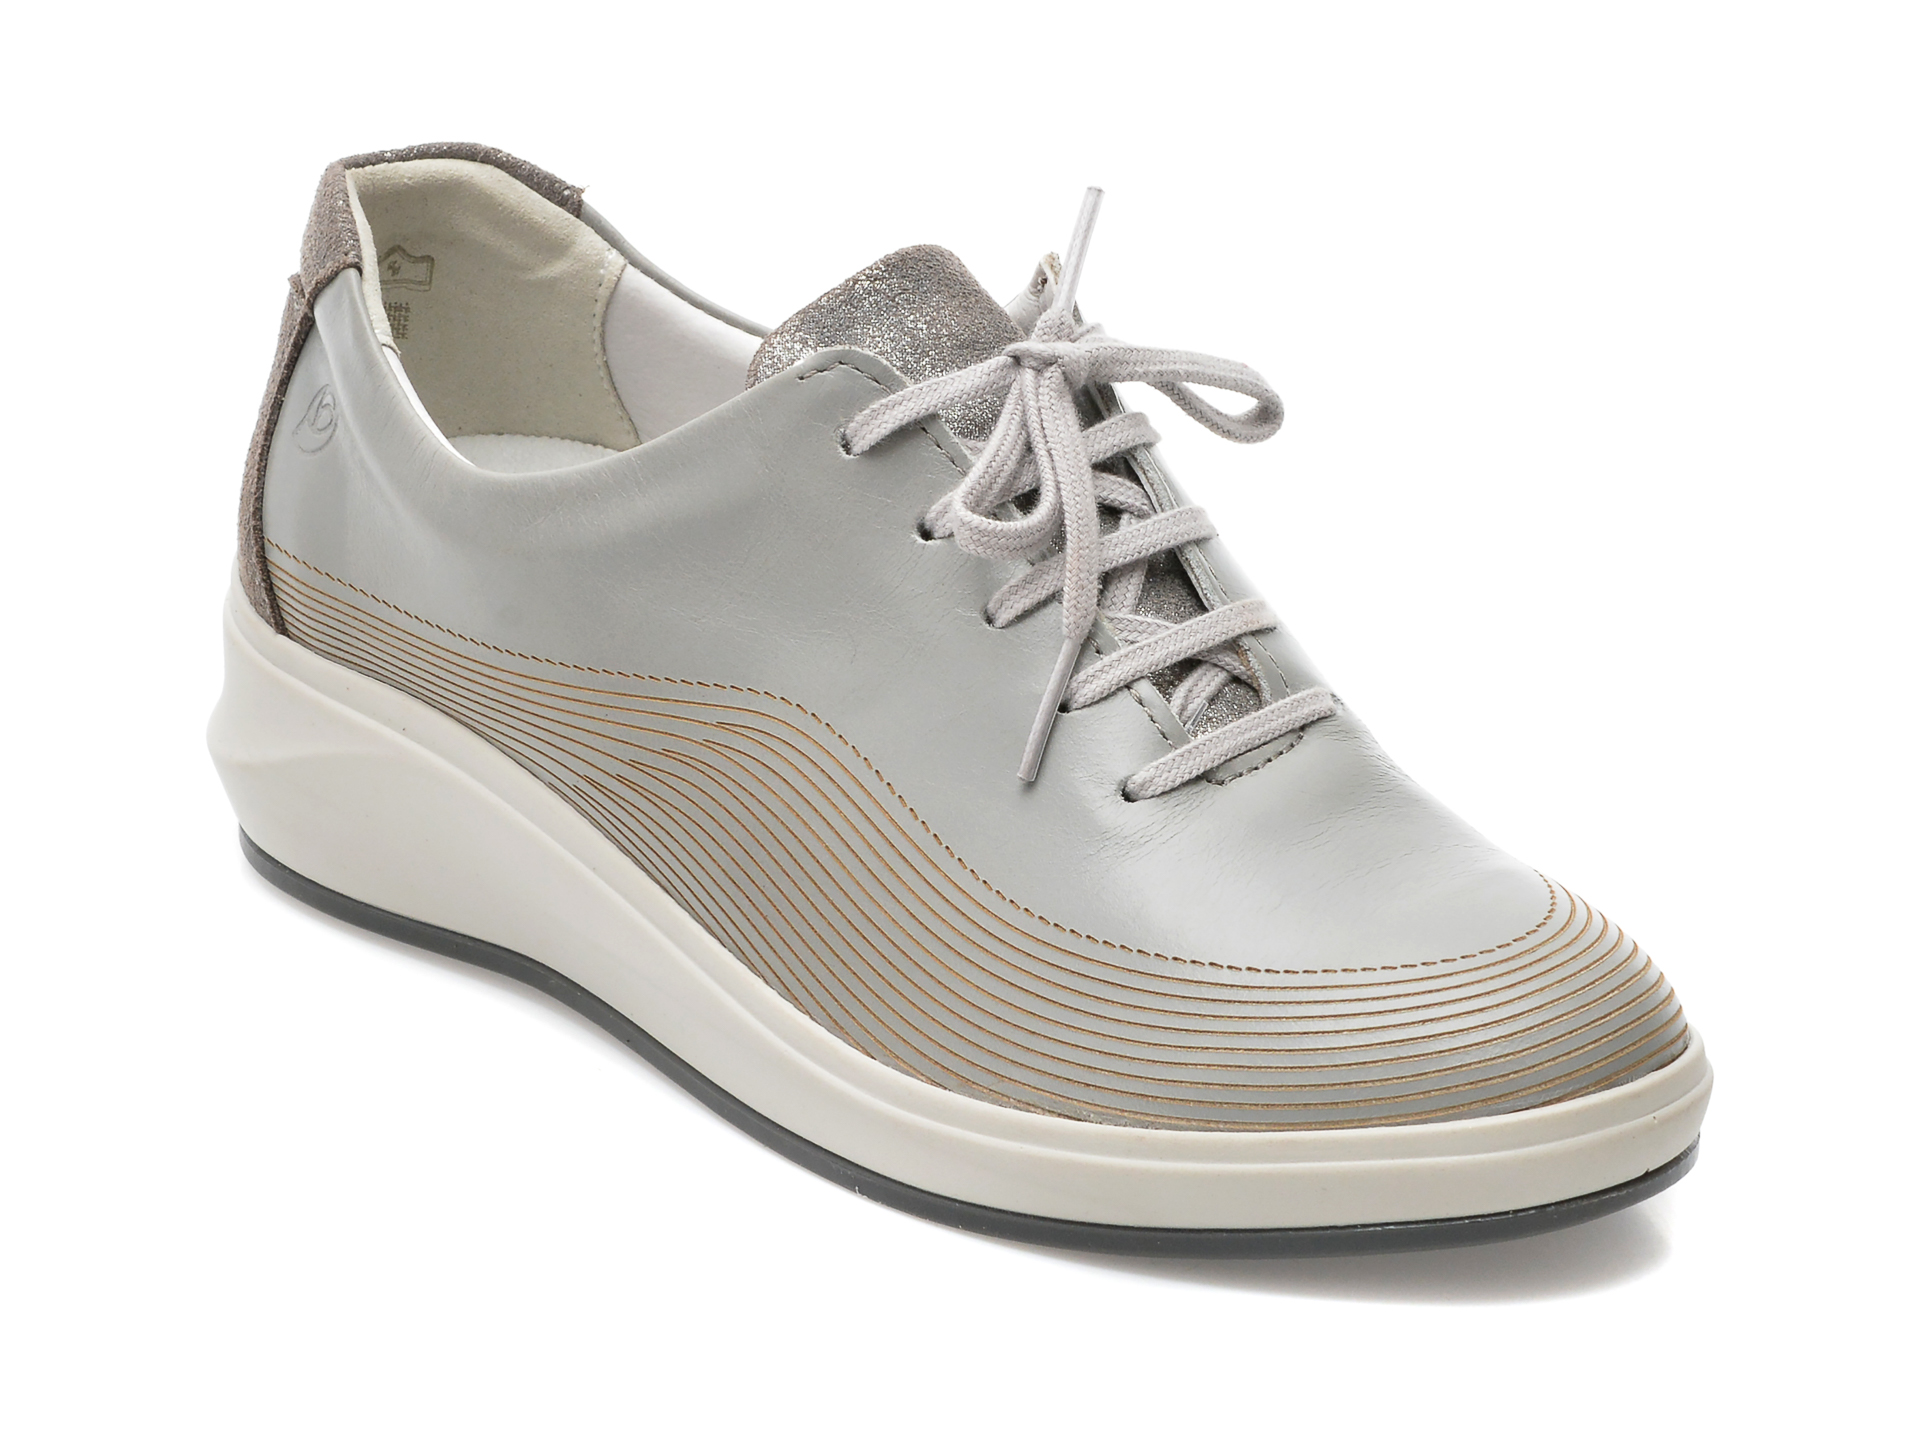 Pantofi SUAVE gri, 13013GT, din piele naturala femei 2023-02-03